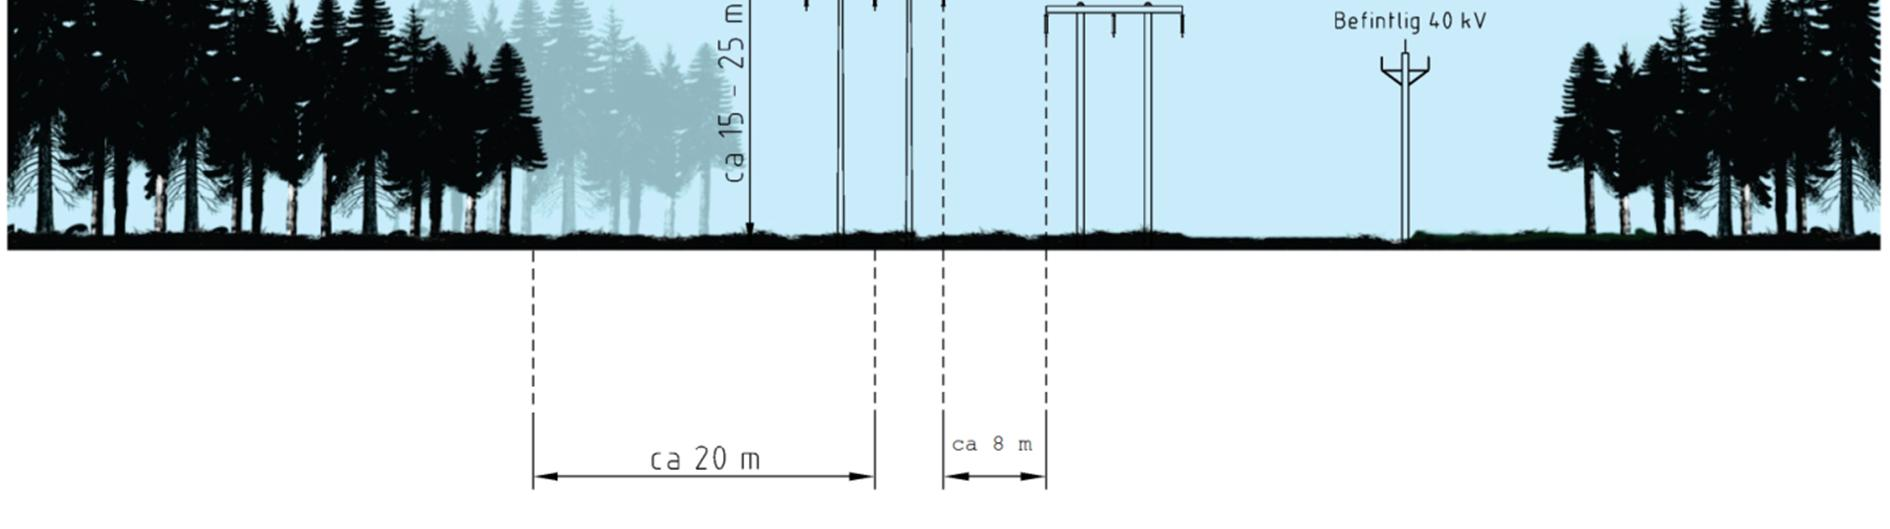 Figur 13. Exempelbild på skogsgata där ledningen är uppförd i en portalstolpe parallellt med befintliga 40 och 140 kv-ledningar söder om transformatorstationen Tranemo. Måtten är ungefärliga.